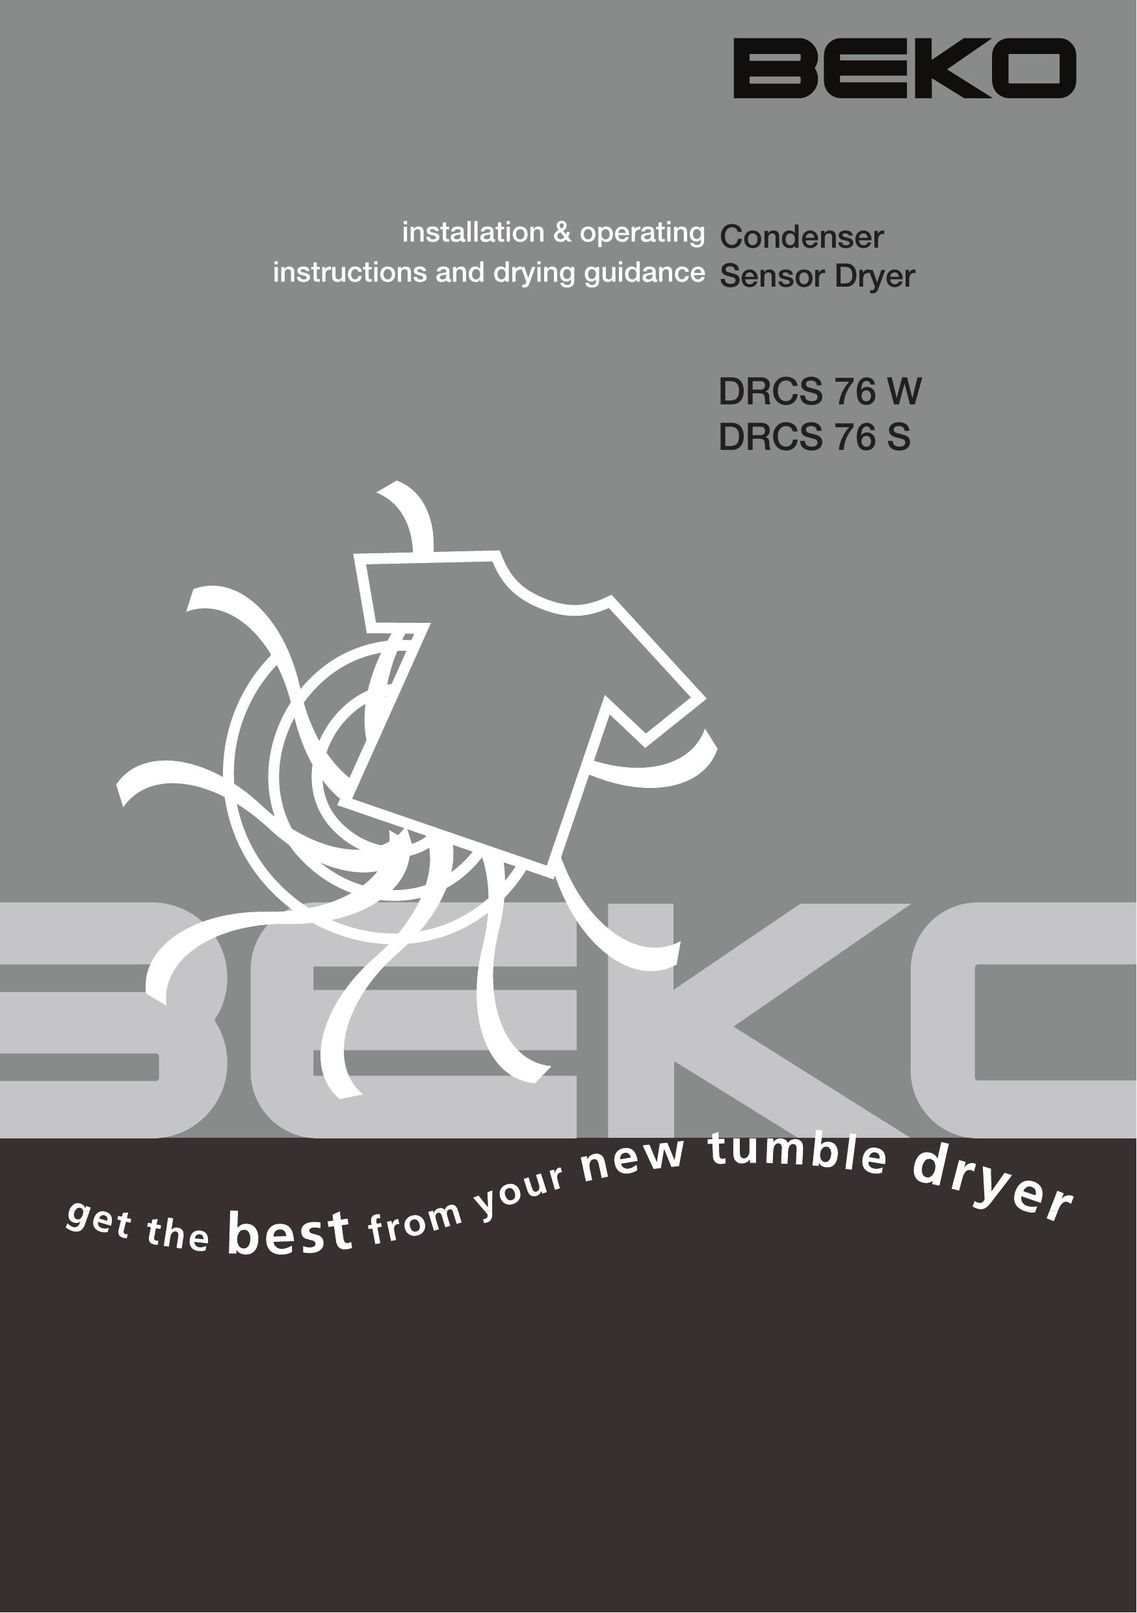 Beko DRCS 76 S Planer User Manual